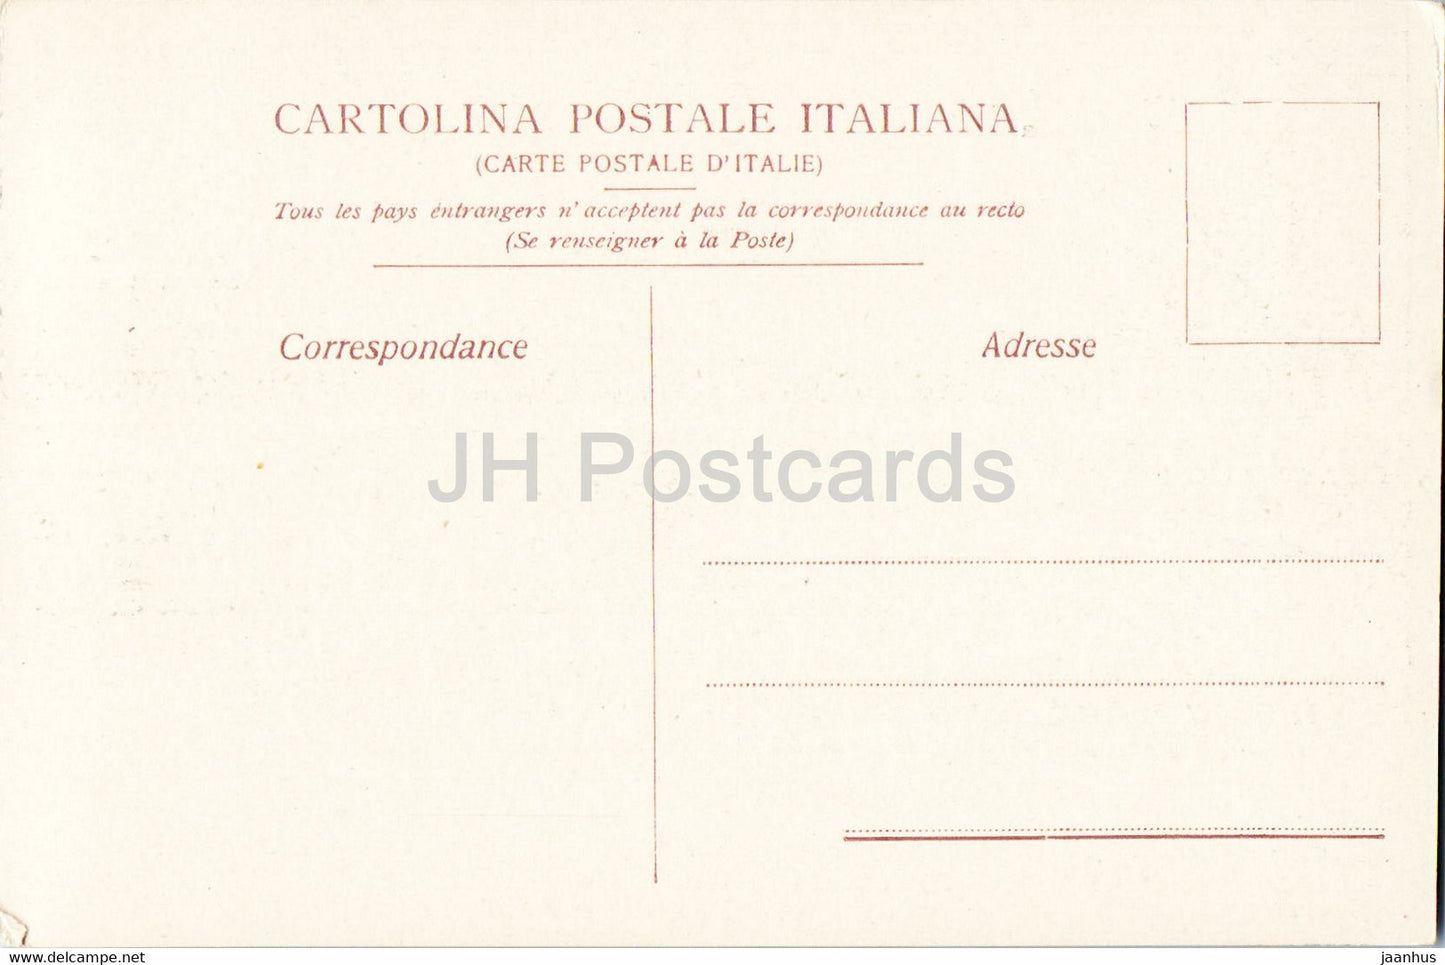 Siracusa - Acquedotto Galermi sur Colle Temenite - Galermi-Aquädukt - 6 - Antike Welt - alte Postkarte - Italien - unbenutzt